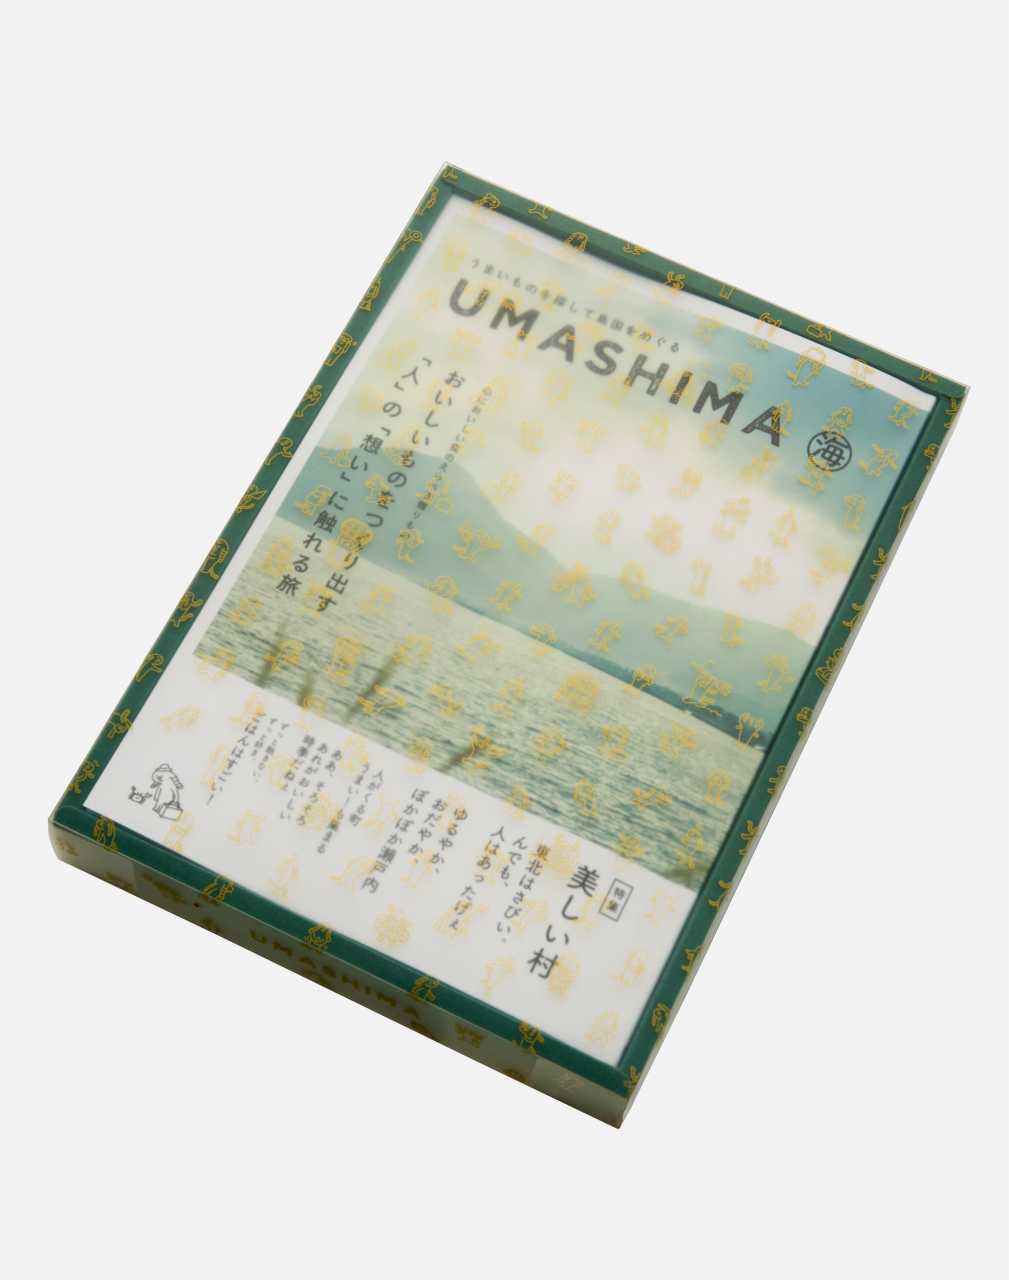 UMASHIMA　海　11,000円コース